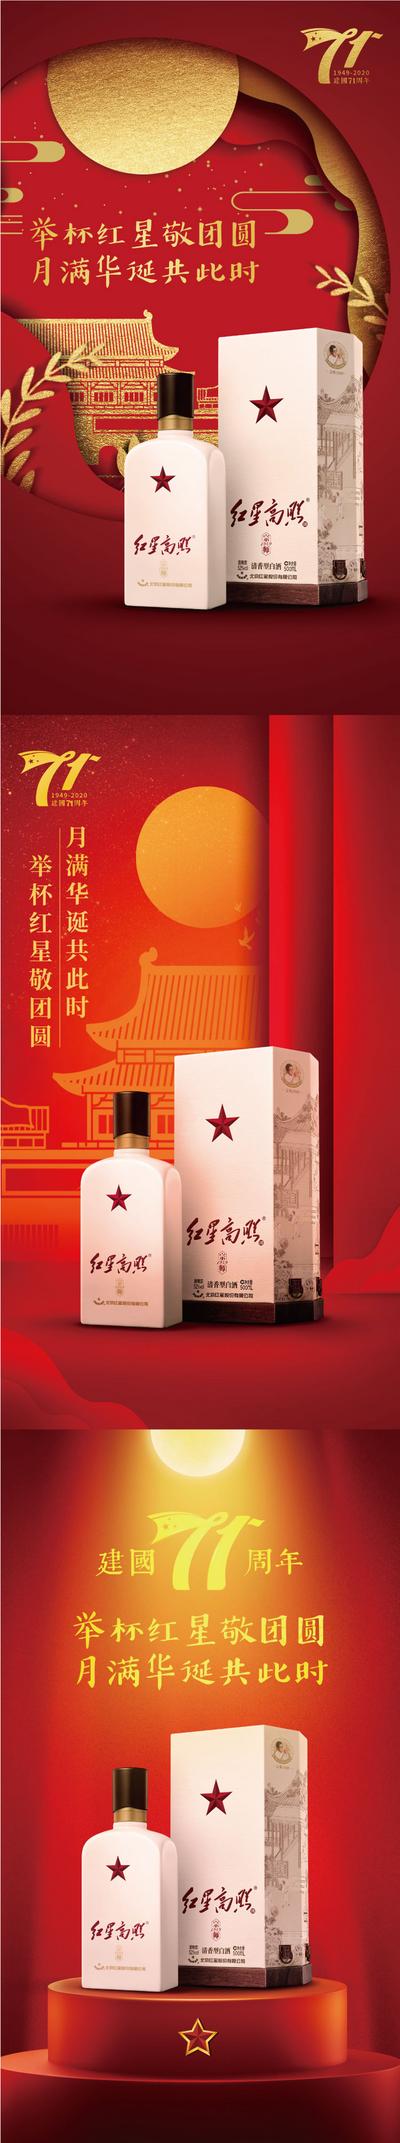 南门网 海报 中国传统节日 中秋节 公历节日 国庆节 白酒